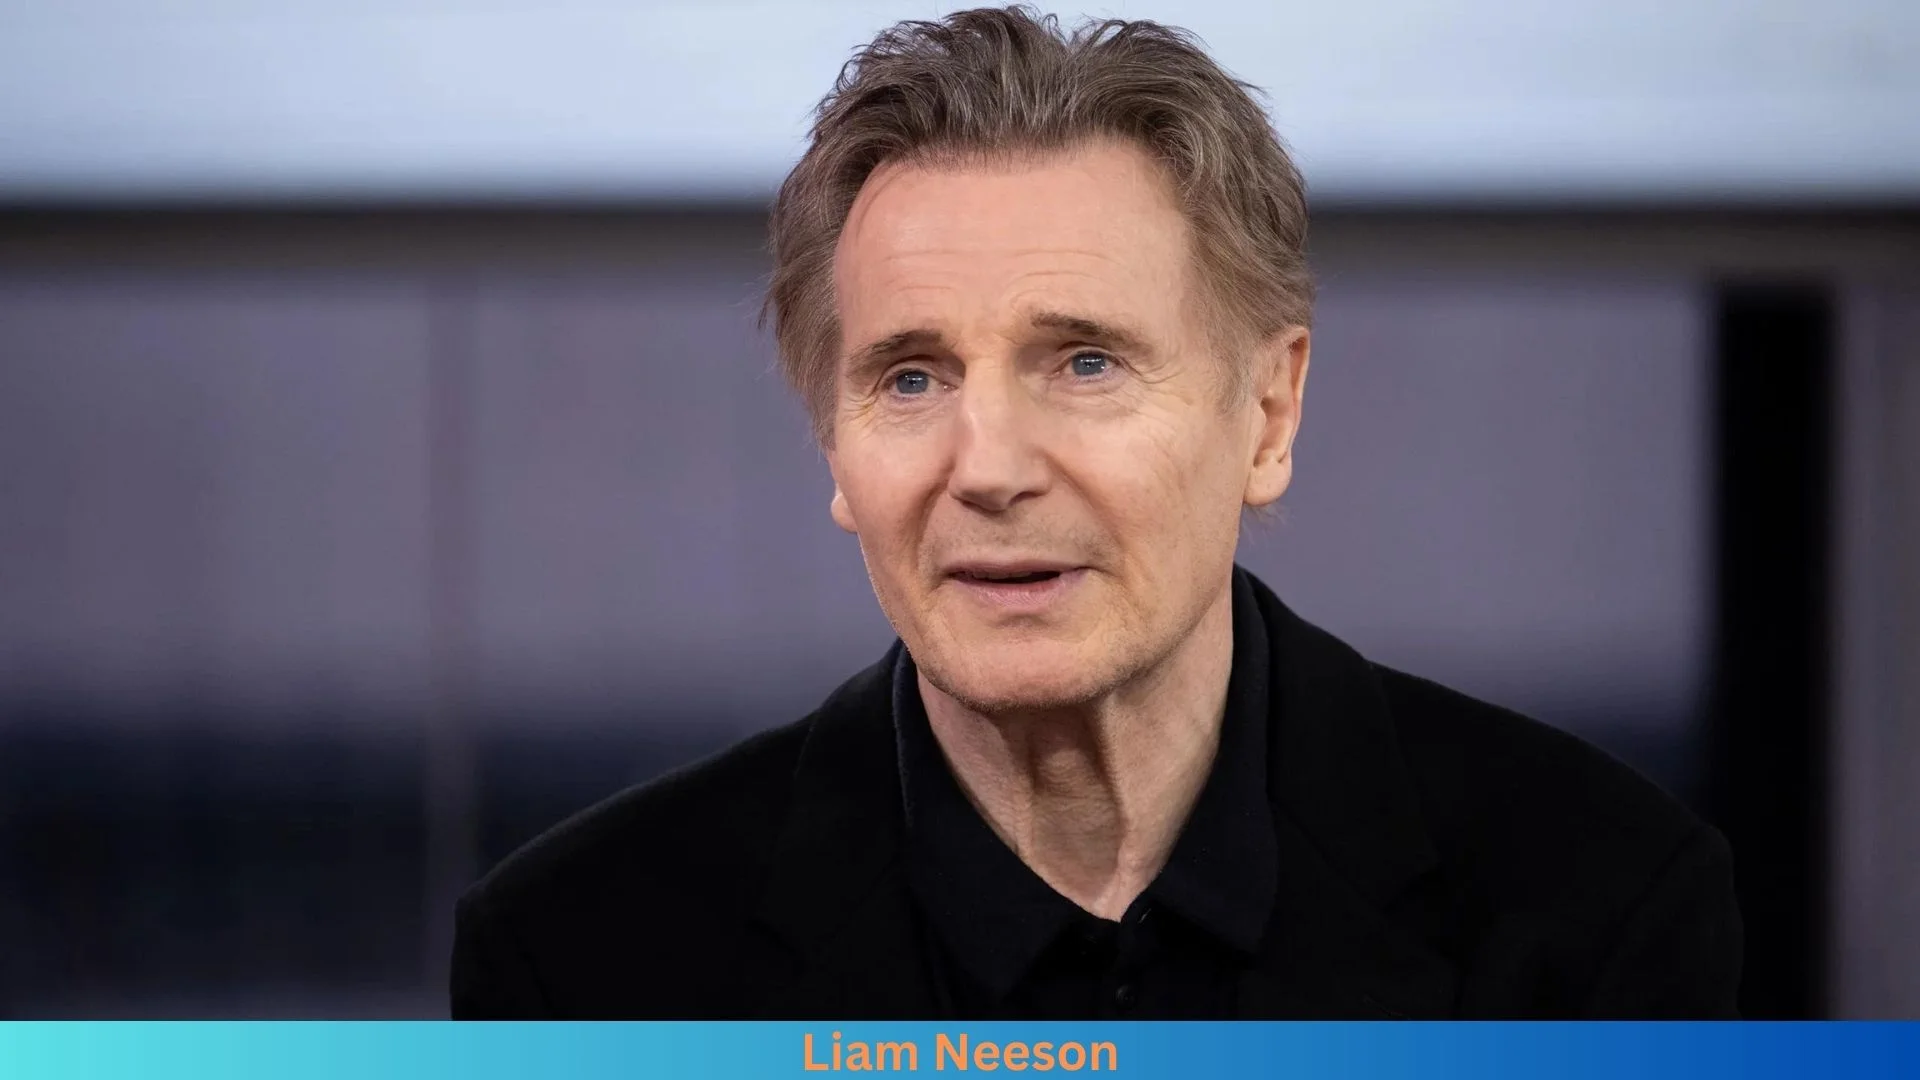 Net Worth of Liam Neeson